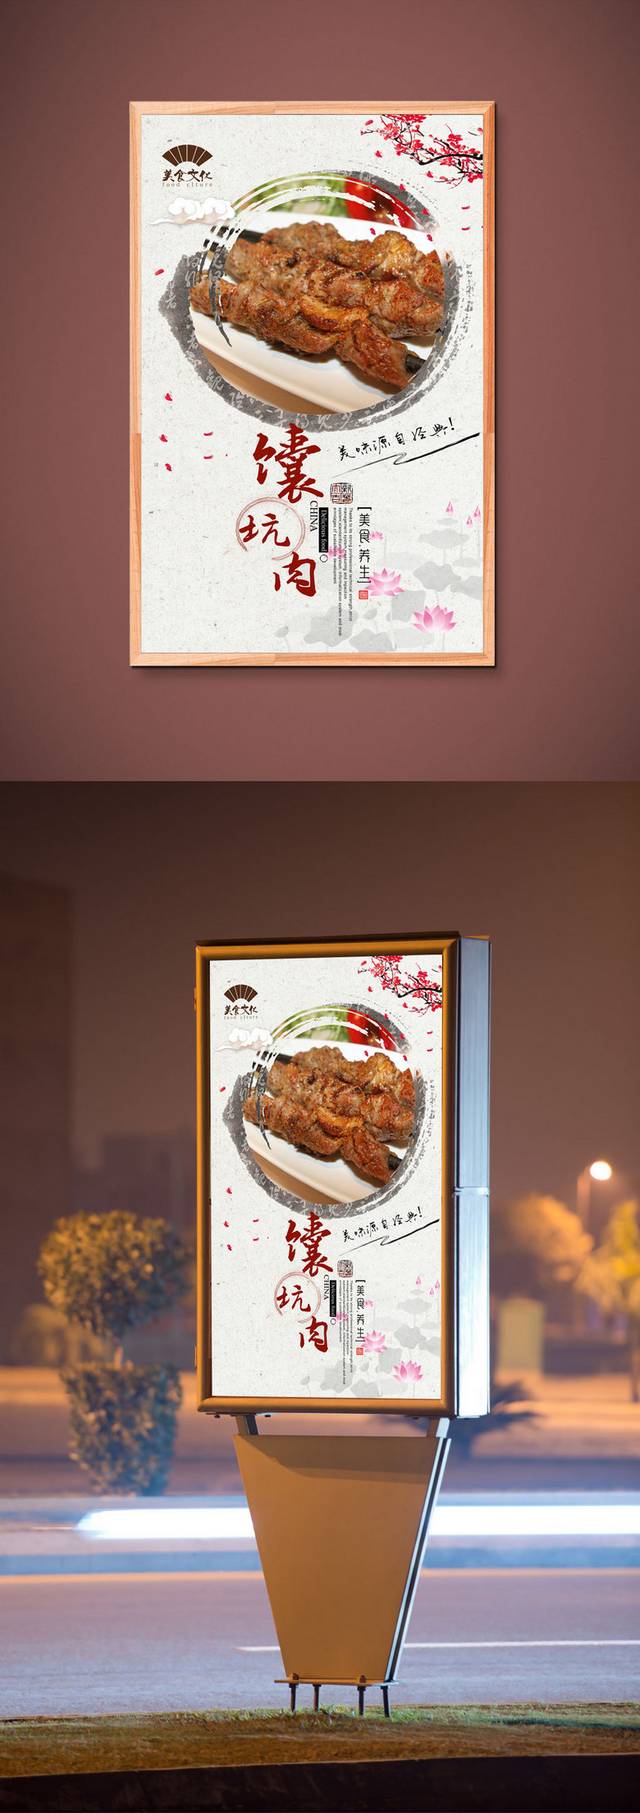 高清中国风馕坑肉宣传海报设计